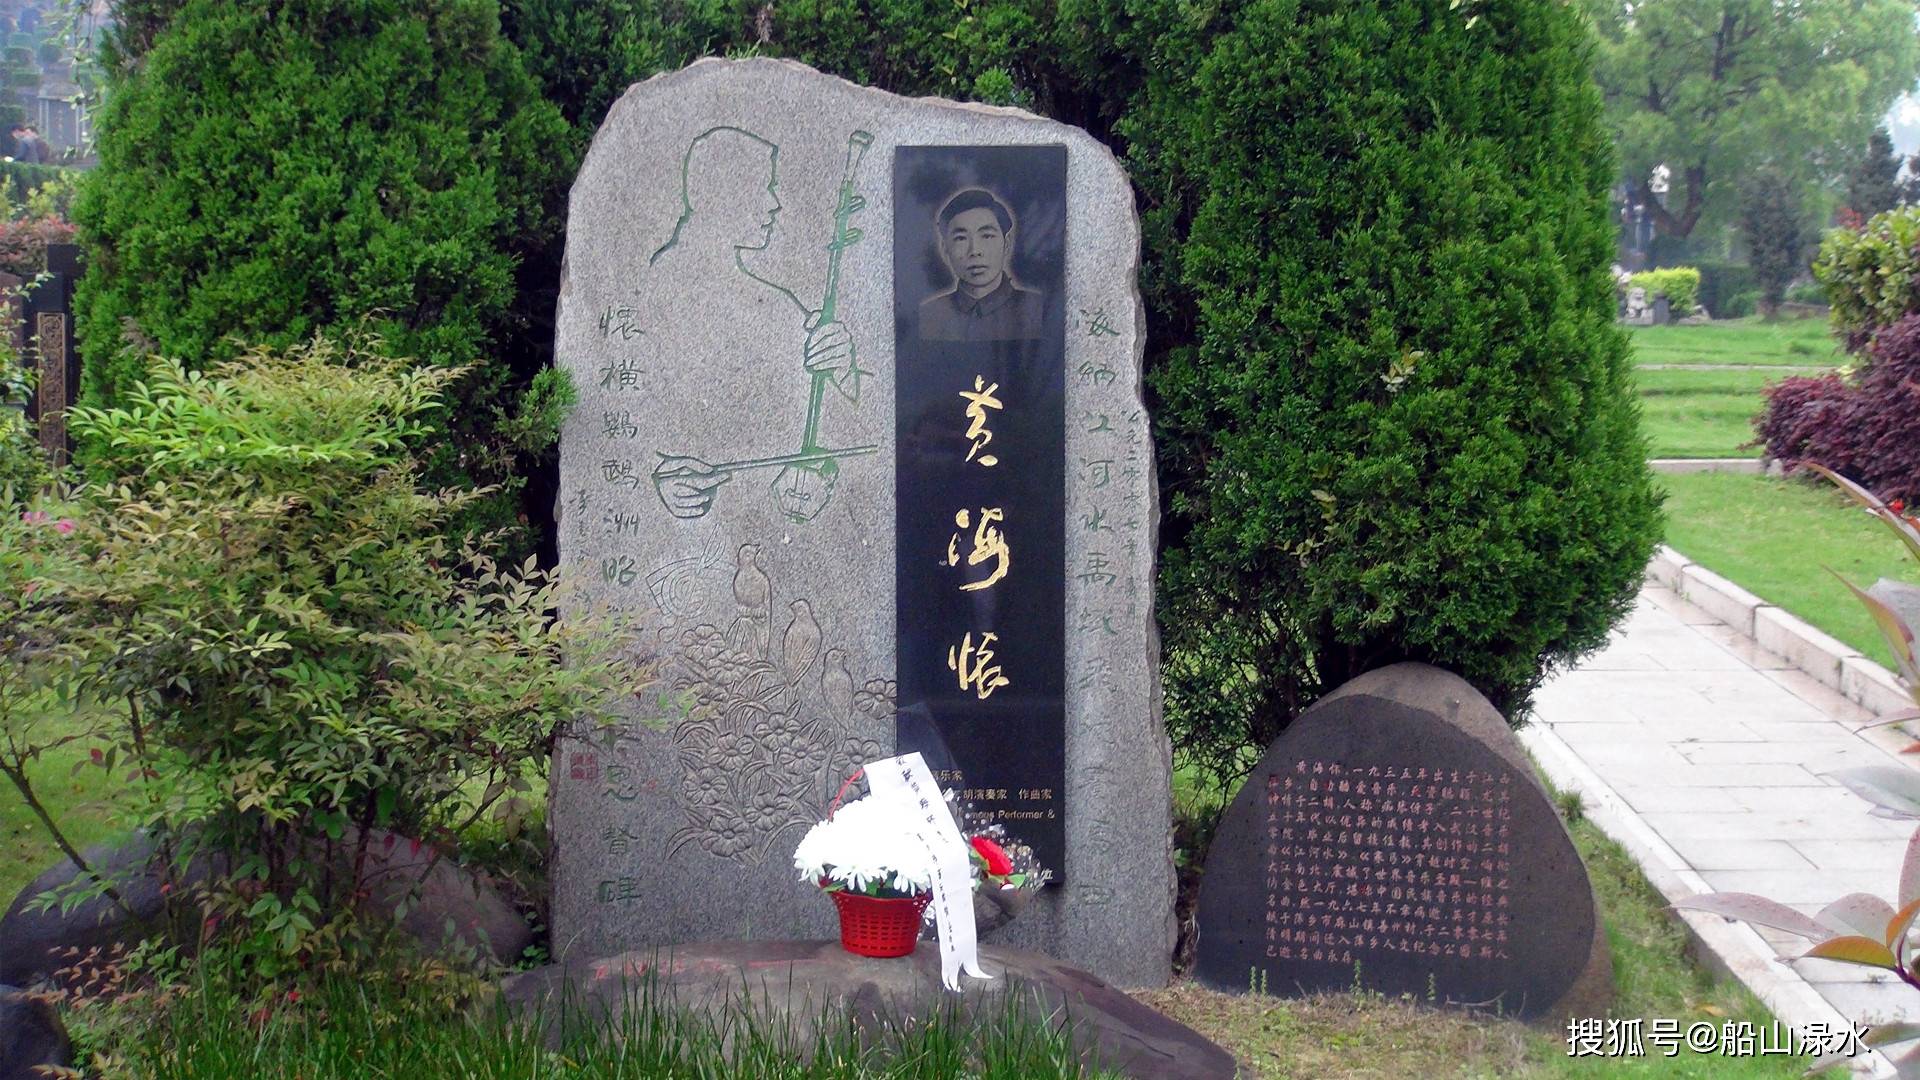 原创萍乡人文公园中的名人墓地